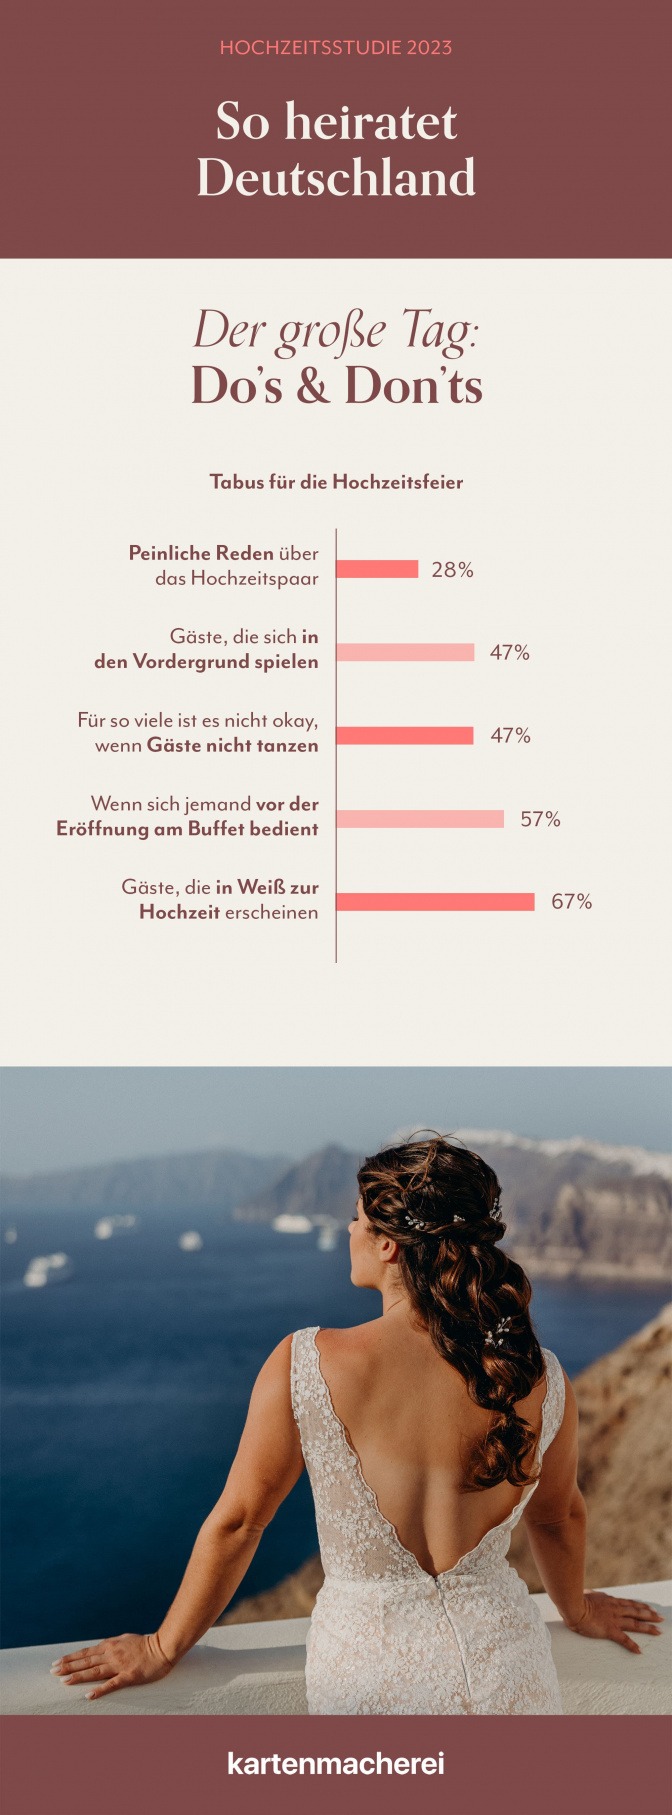 Grafik zeigt, welche Dos und Don'ts den Deutschen bei einer Hochzeitsfeier wichtig sind